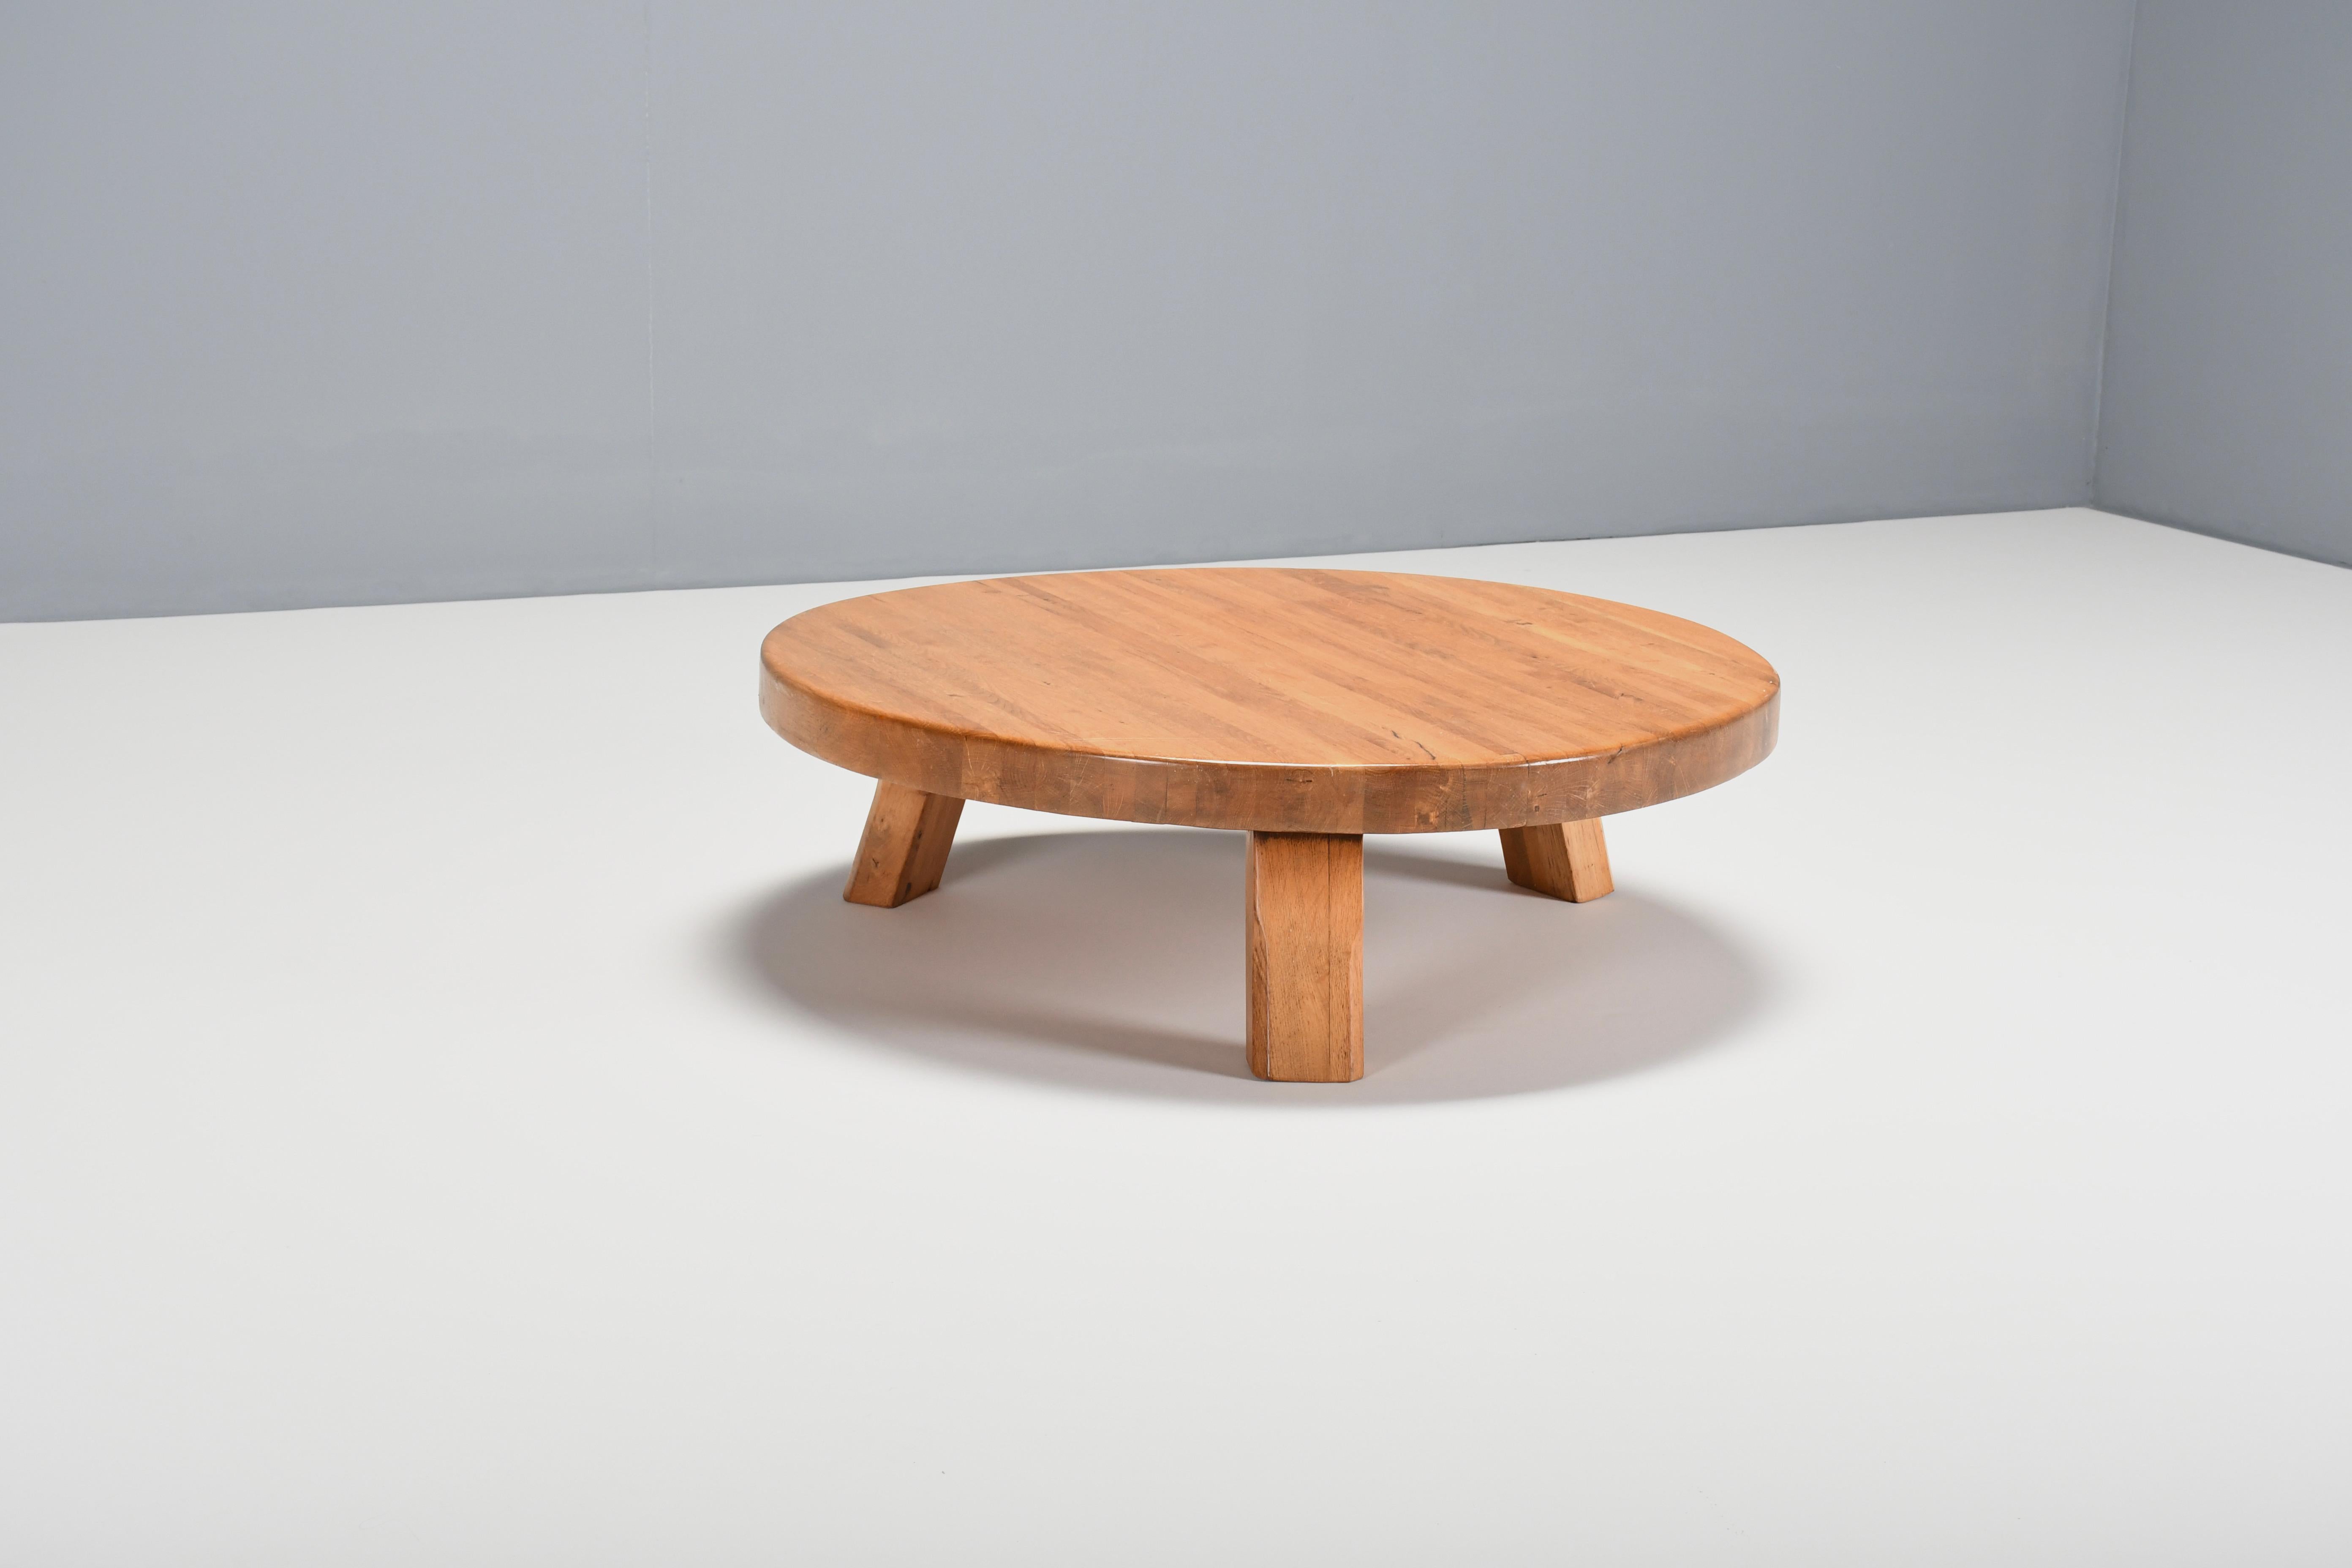 Impressionnante table basse faite à la main en très bon état d'origine. 

La table est fabriquée en chêne français massif. 

Le plateau rond et épais a une belle couleur chaude et est composé de poutres étroites, ce qui donne un bel effet.

La base